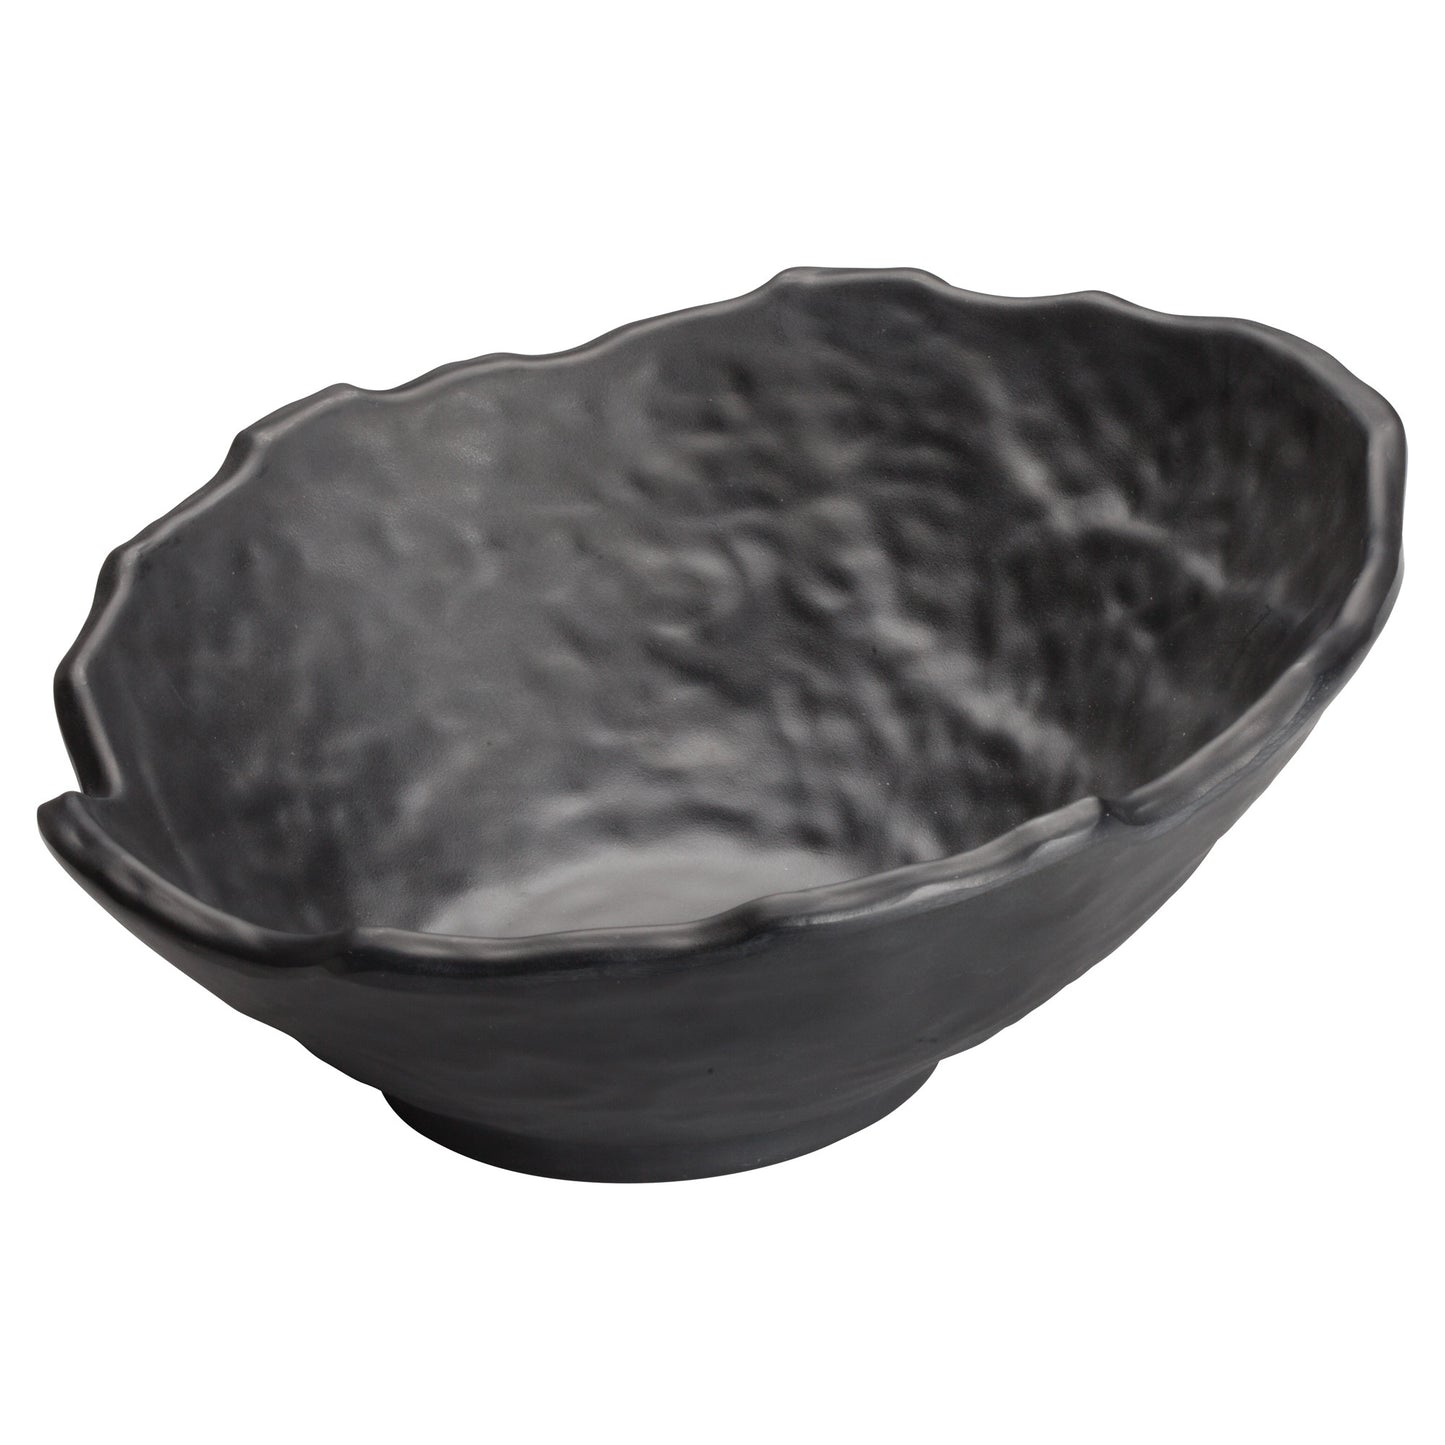 WDM019-308 - 9"Dia Melamine Angled Bowl, Black, 12pcs/case